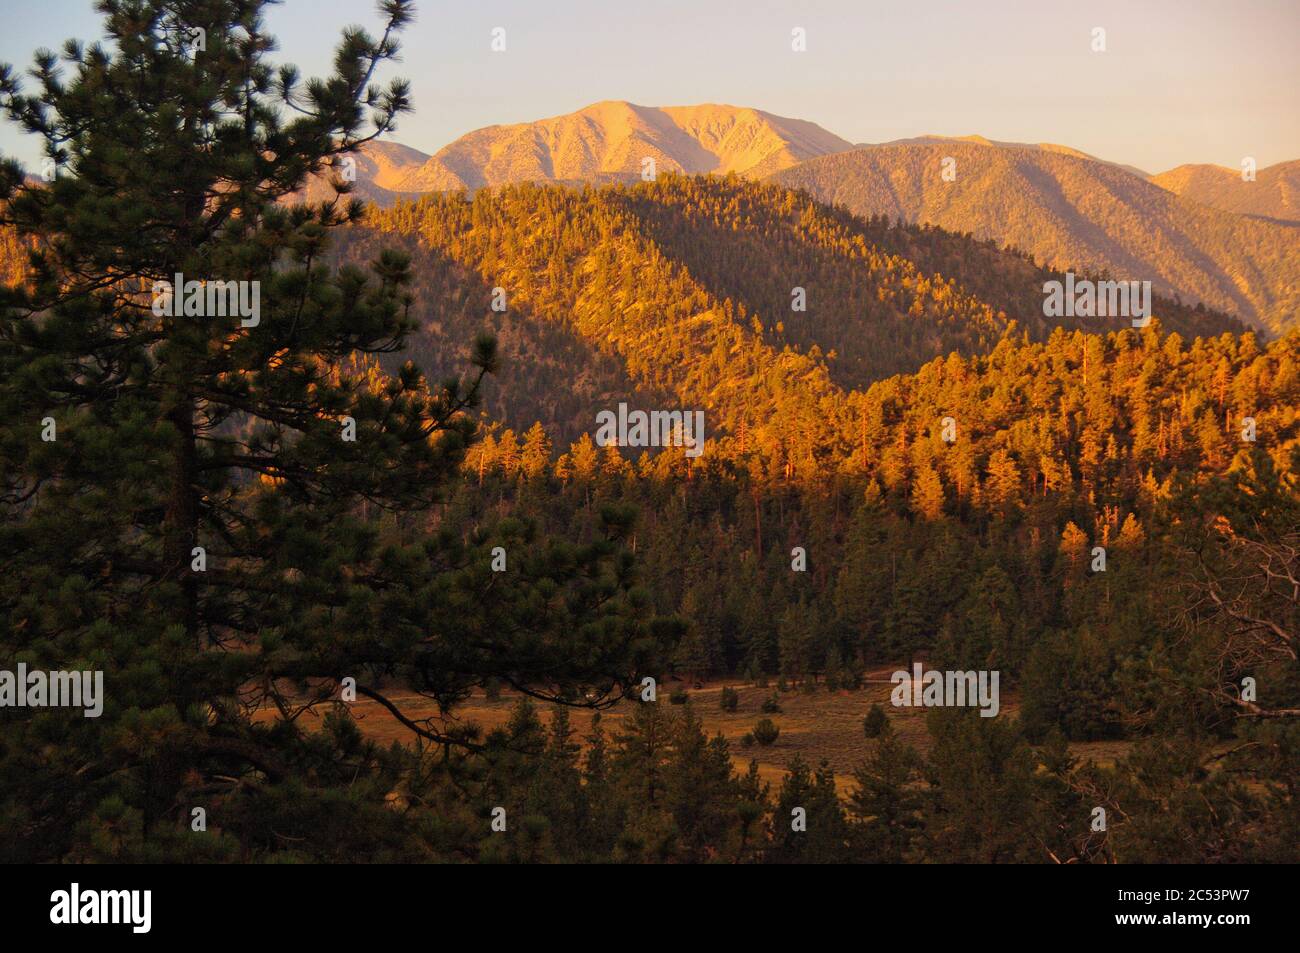 Sunrise, San Bernardino Mountains, California Stock Photo